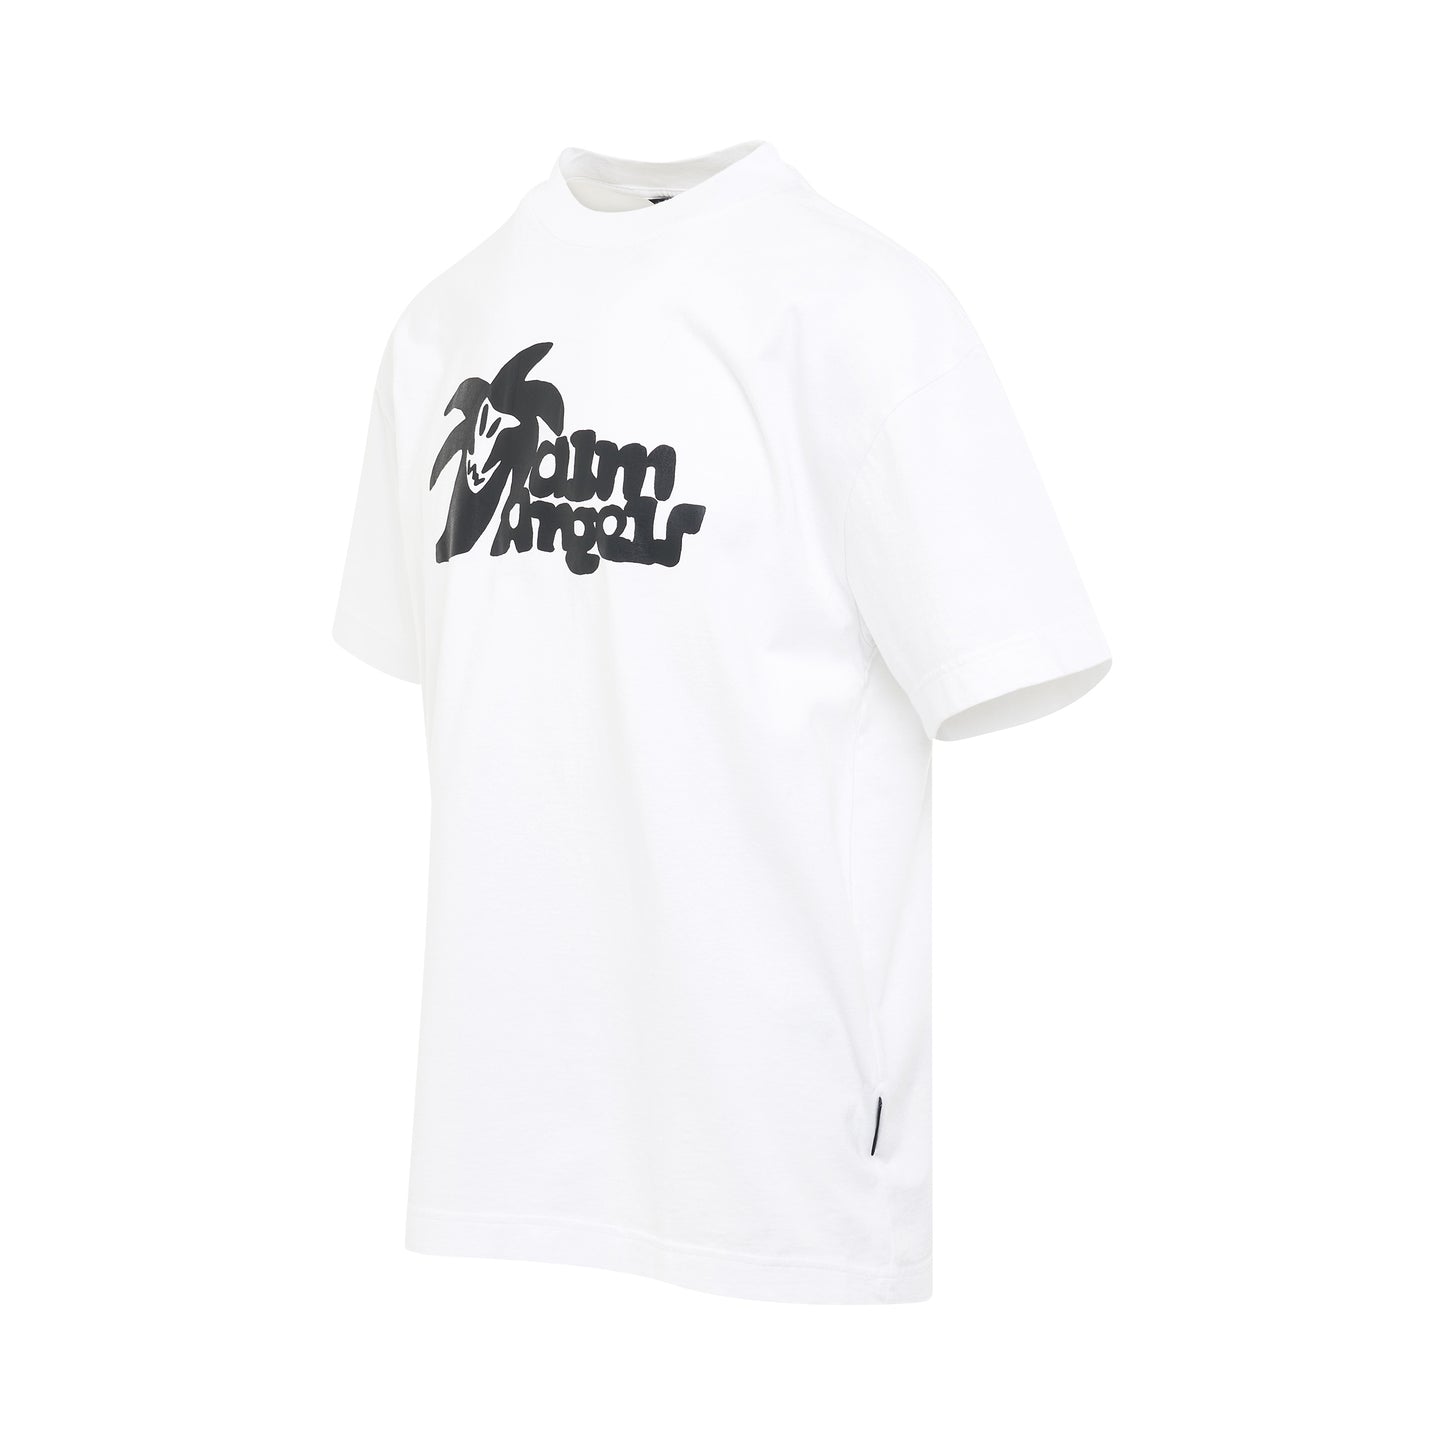 "Hunter" Logo Print T-Shirt in White/Black